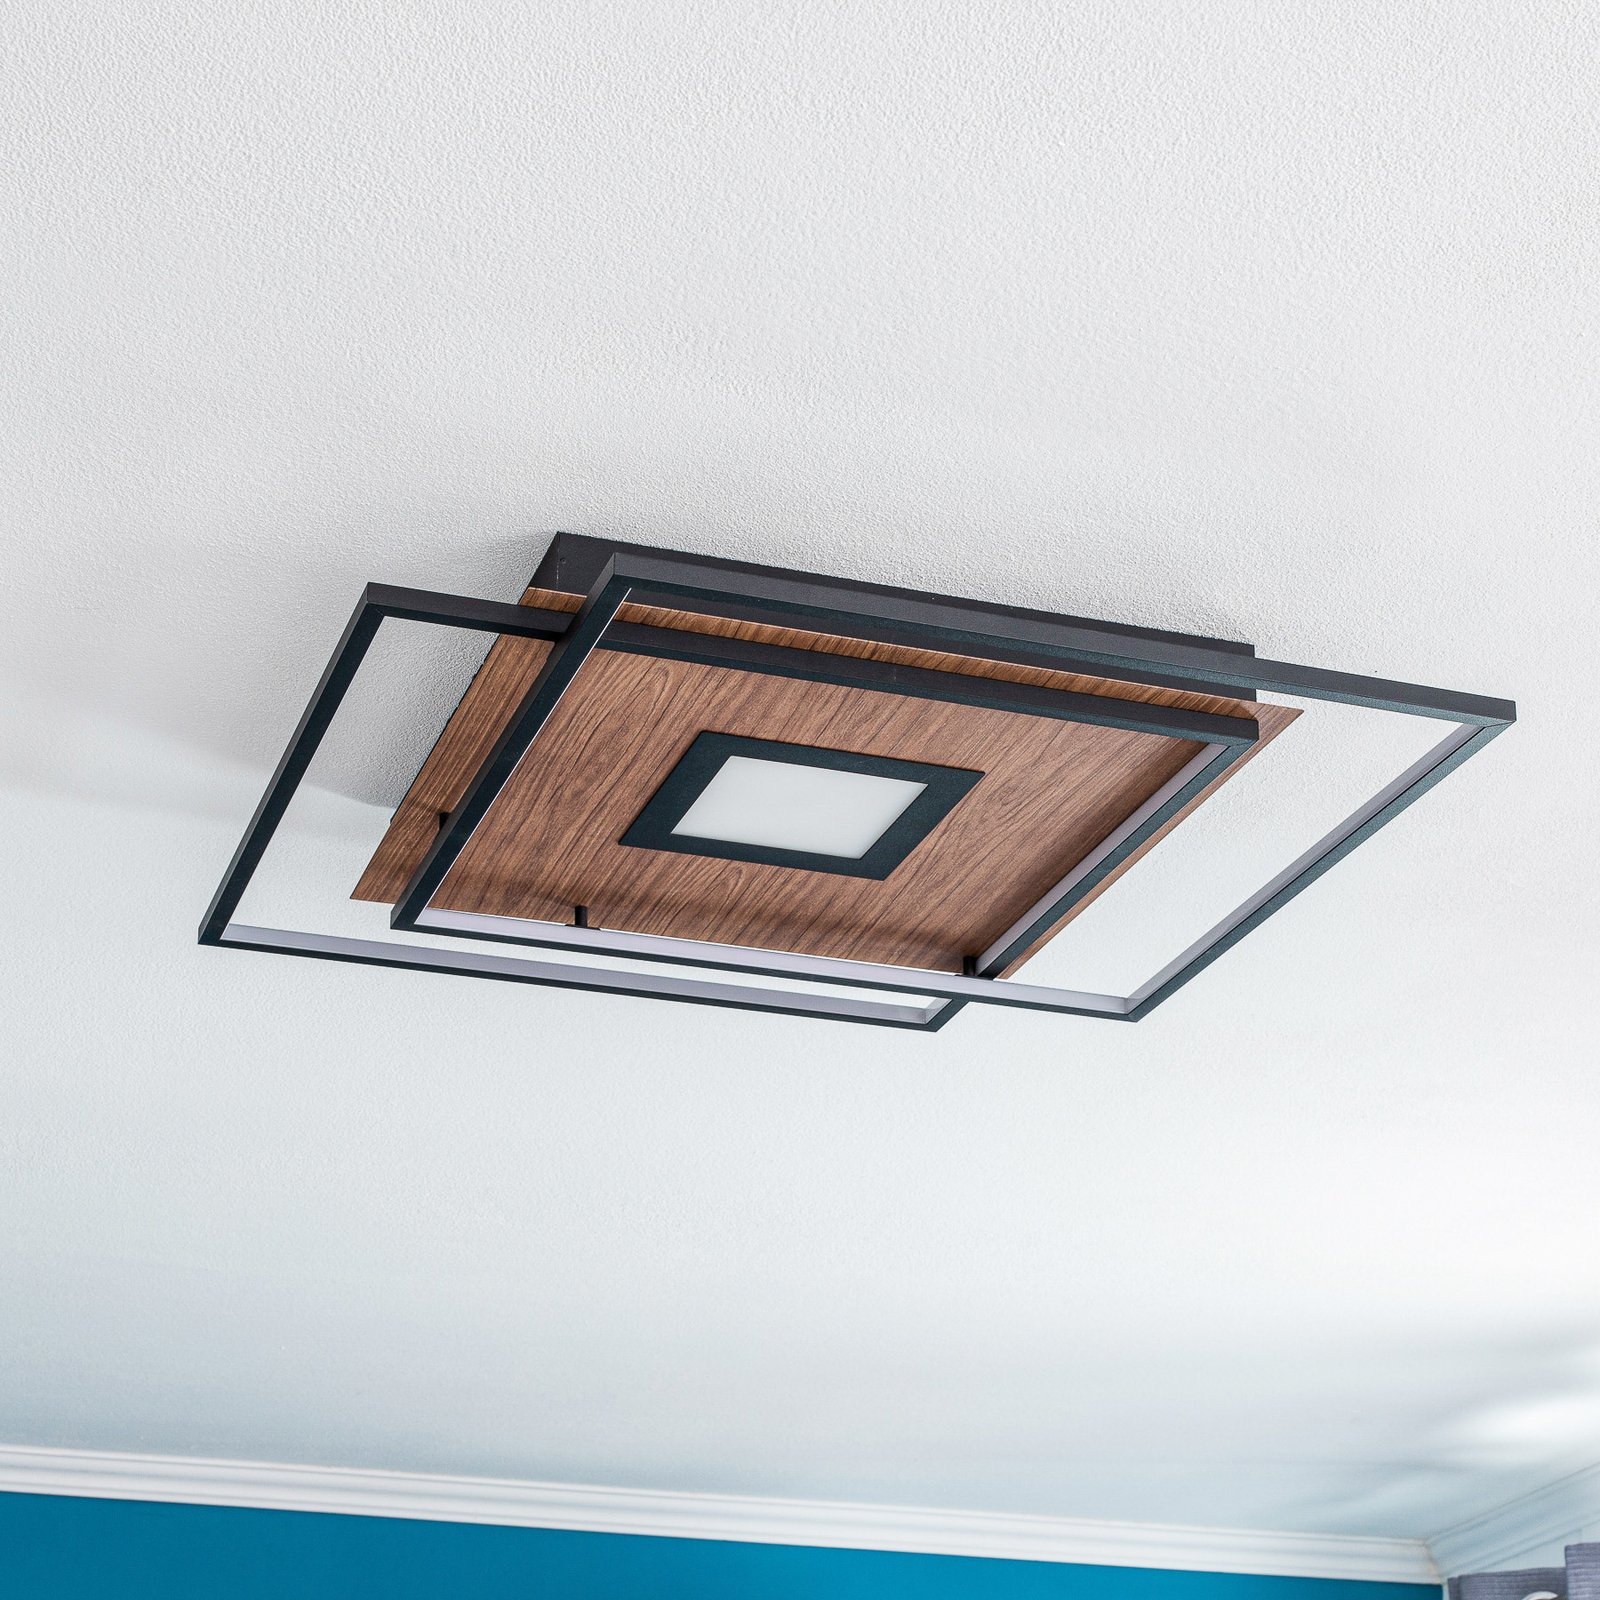 Lucande Jirya LED plafondlamp, CCT, hout